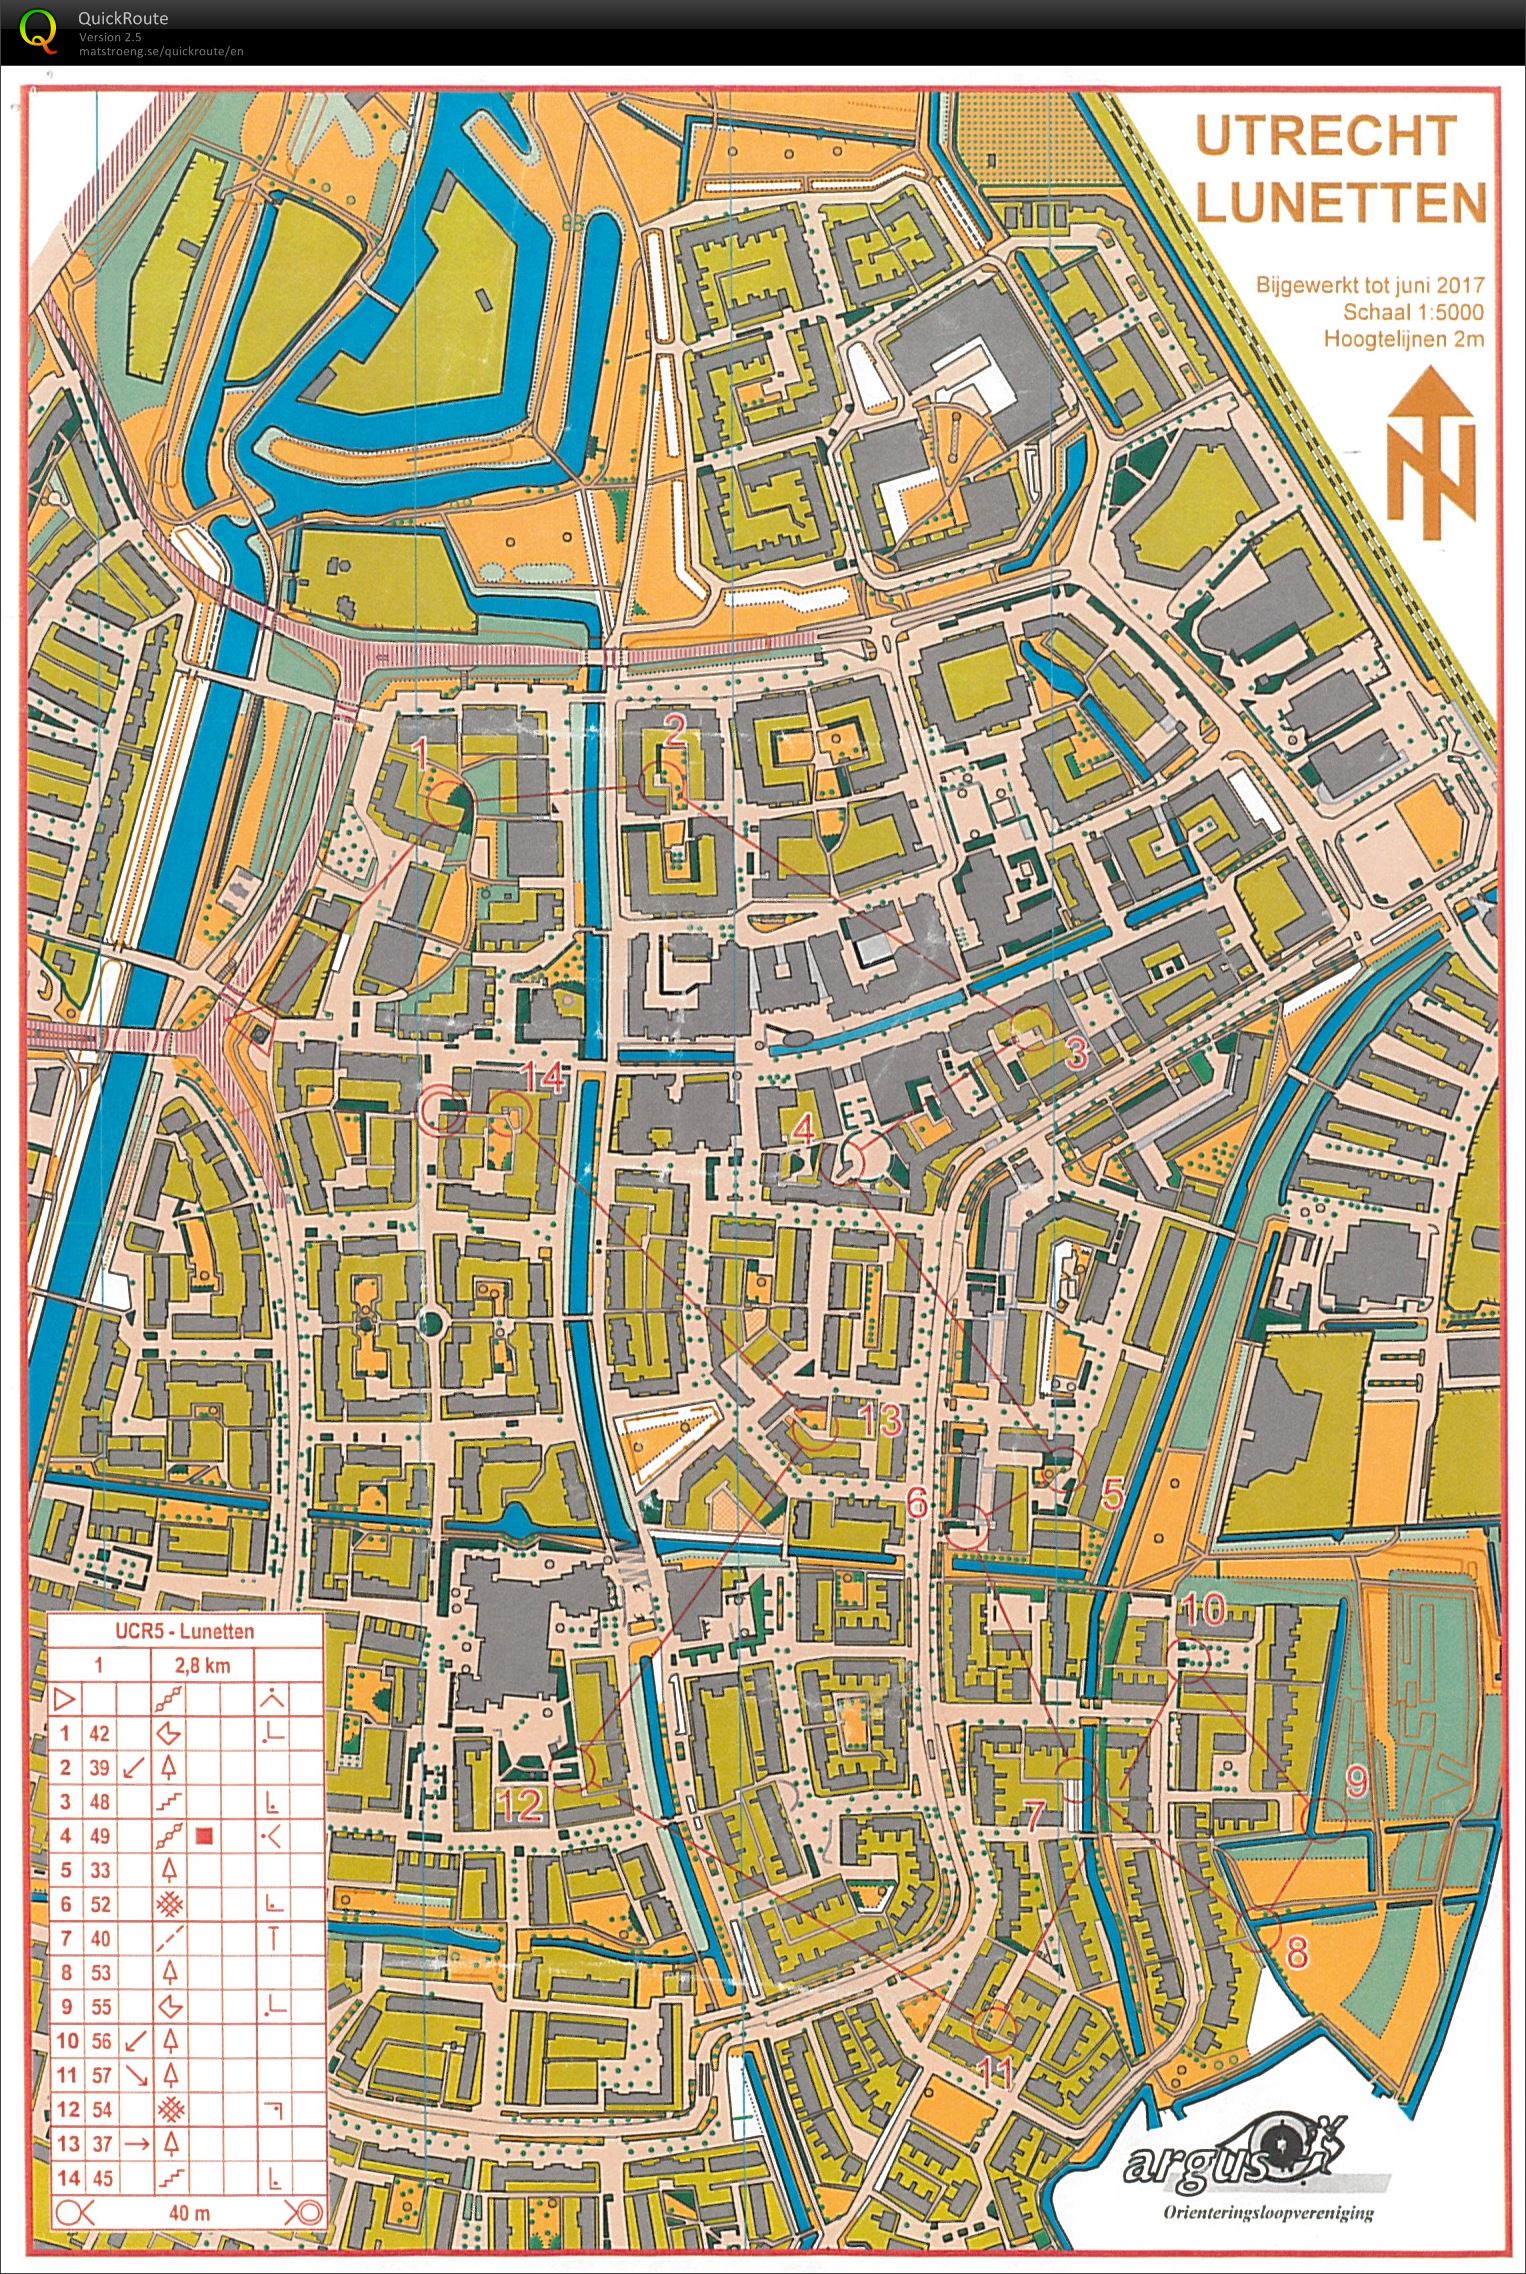 Utrecht City Race #5, route 1 (02-07-2017)